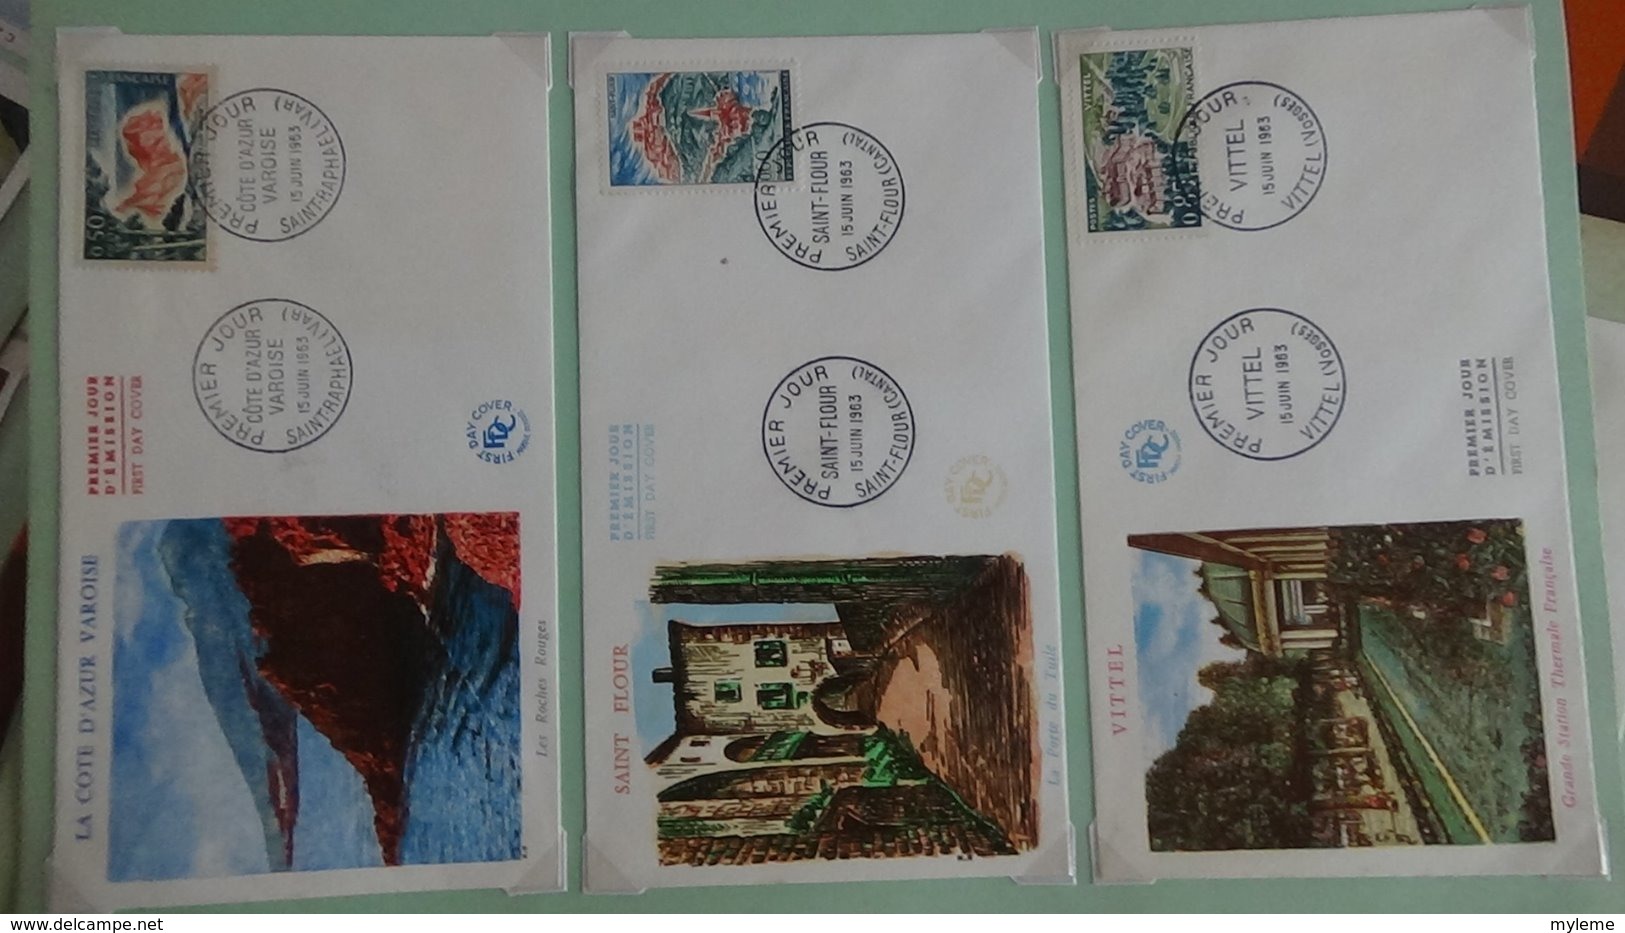 62 enveloppes 1er jour de France 1963 PORT OFFERT (lettre verte)  si ce lot dépasse les 10 euros soit 15cts/pièce